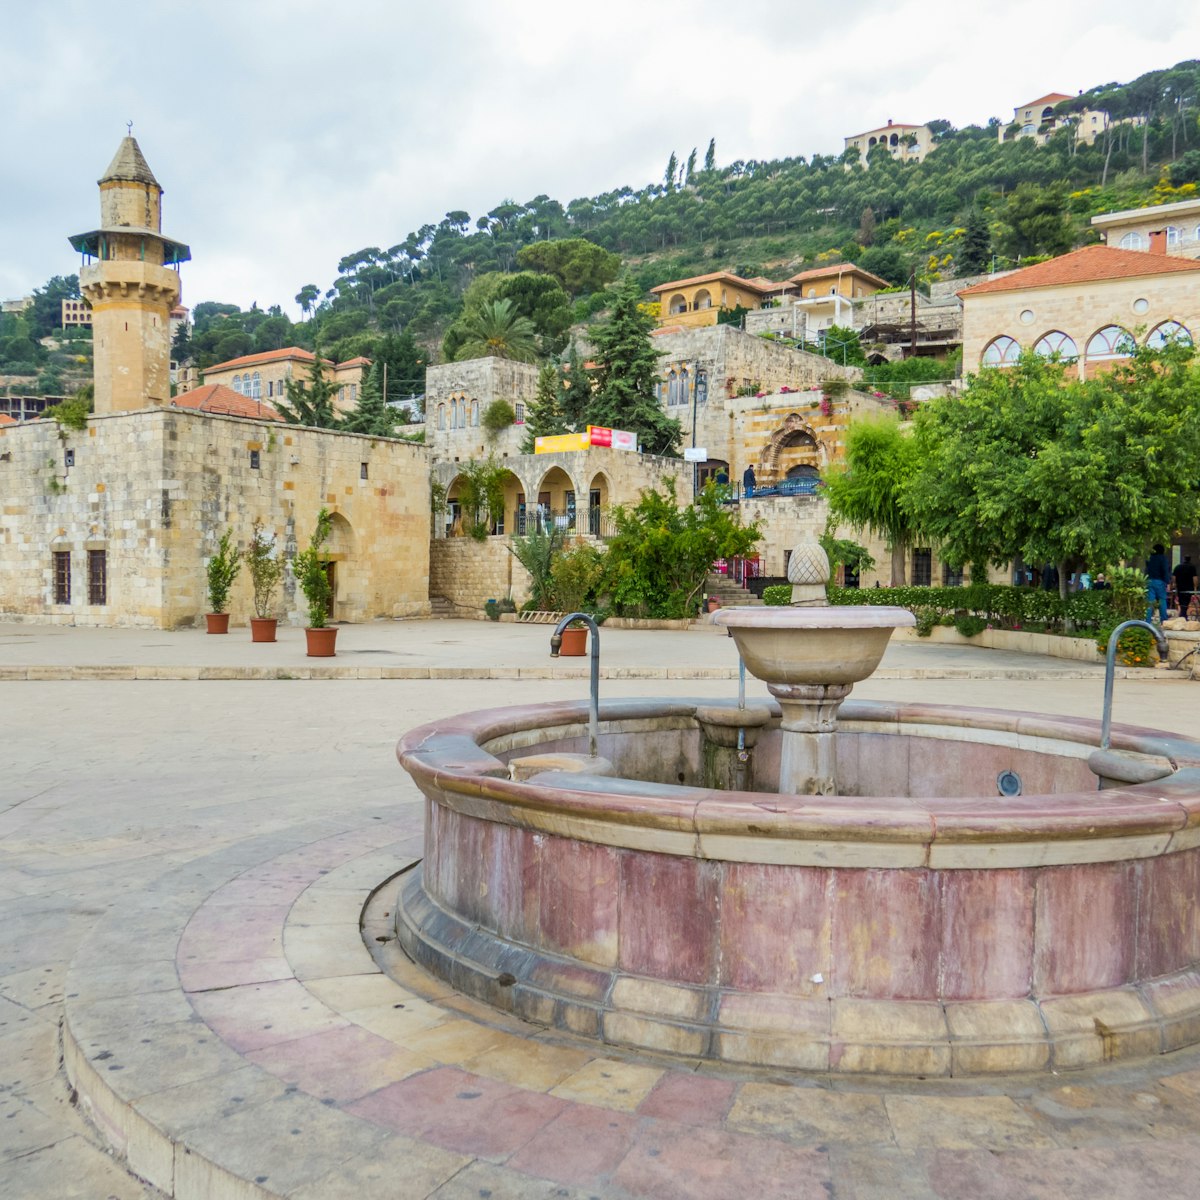 The main square in Deir Al-Qamar, Lebanon.